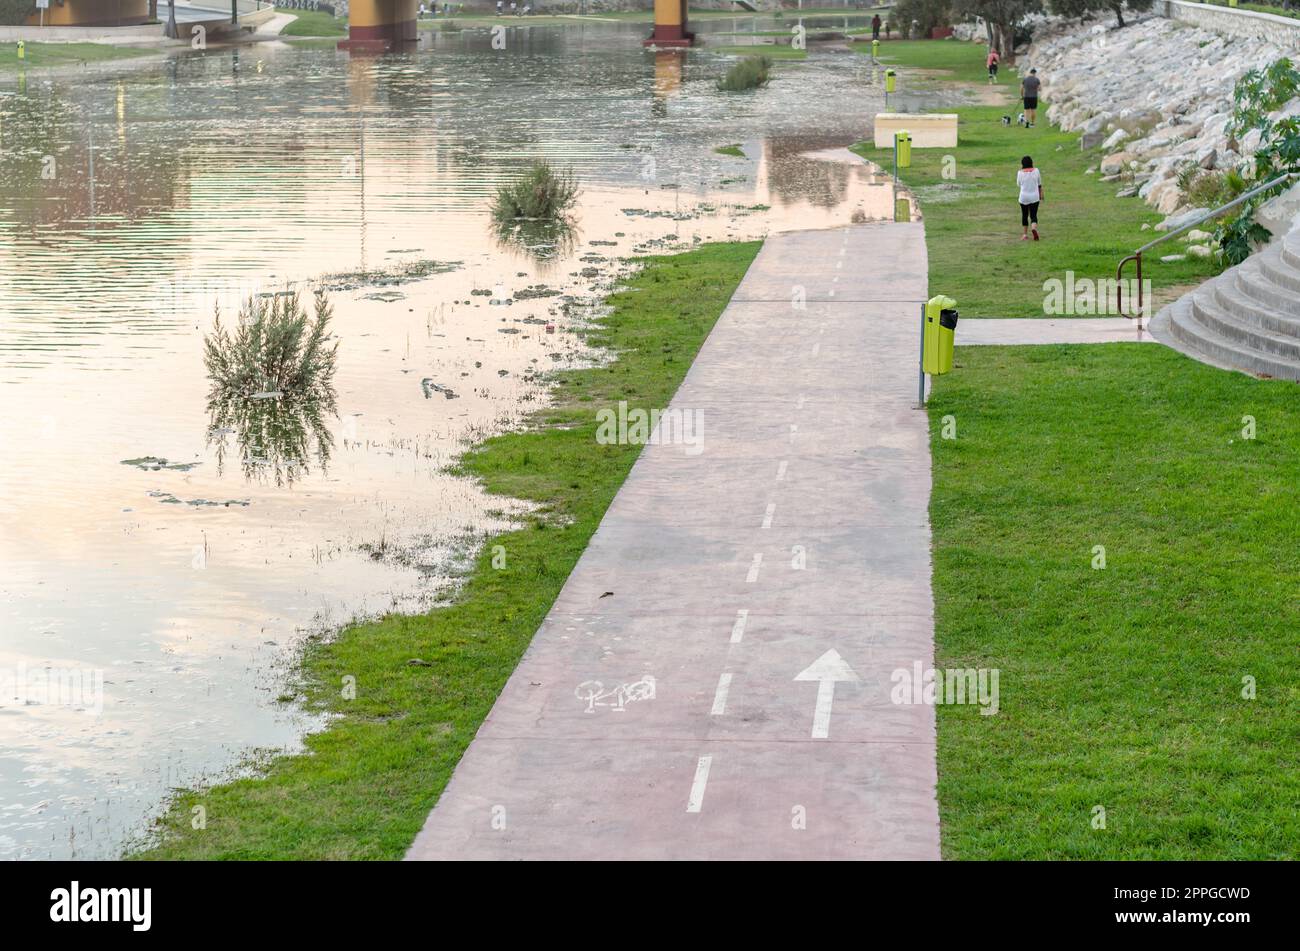 FUENGIROLA, ESPAGNE - 11 OCTOBRE 2021 : zone inondée sur les rives de la rivière Fuengirola lors d'une tempête dans la ville de Fuengirola, Andalousie, sud de l'Espagne Banque D'Images